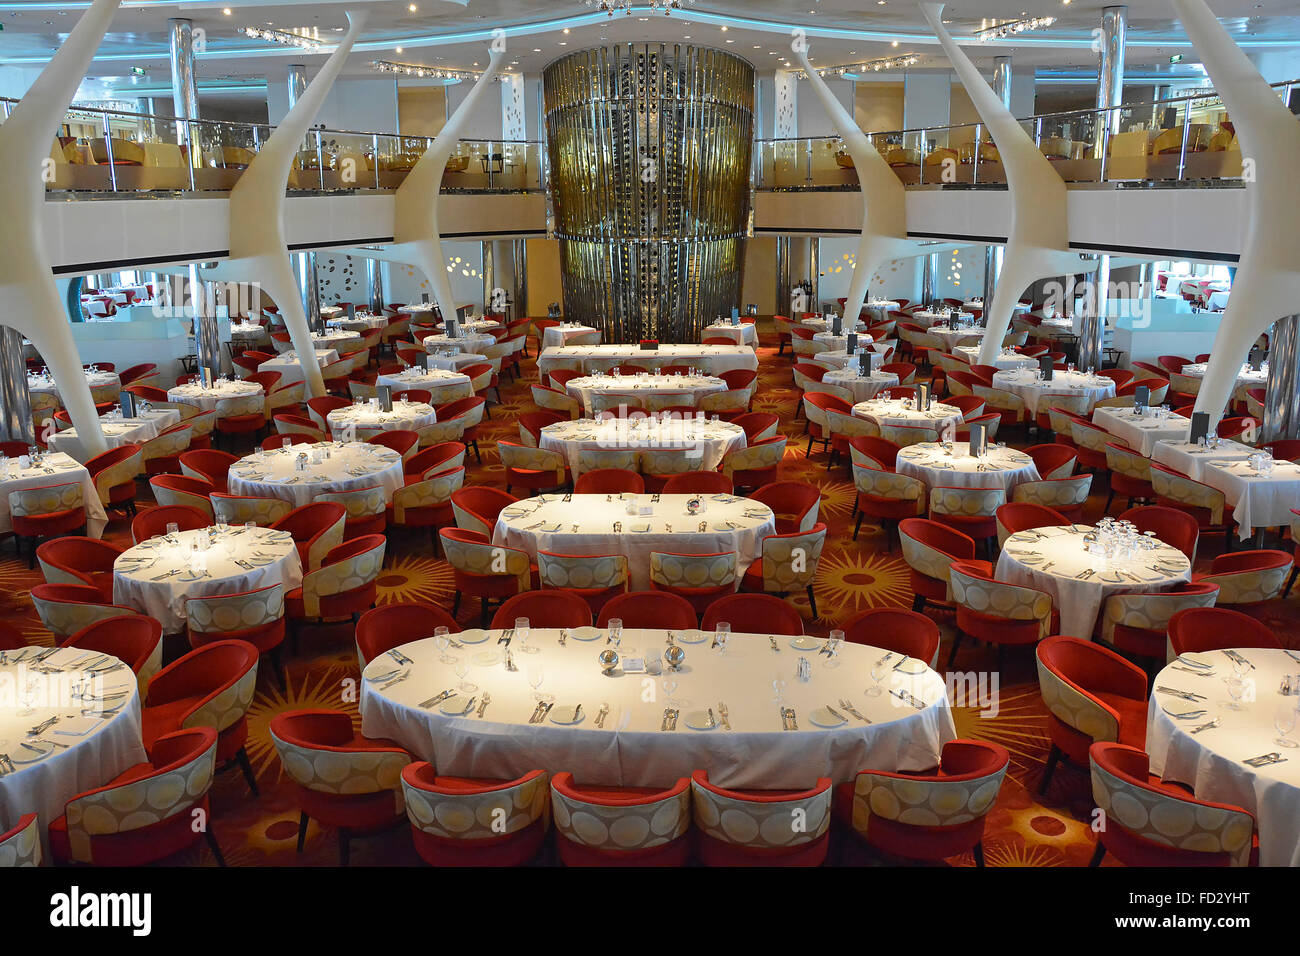 Vue intérieure du paquebot de croisière sur le design du restaurant de luxe, les tables et les chaises sont préparées pour une soirée gastronomique en mer Méditerranée Banque D'Images